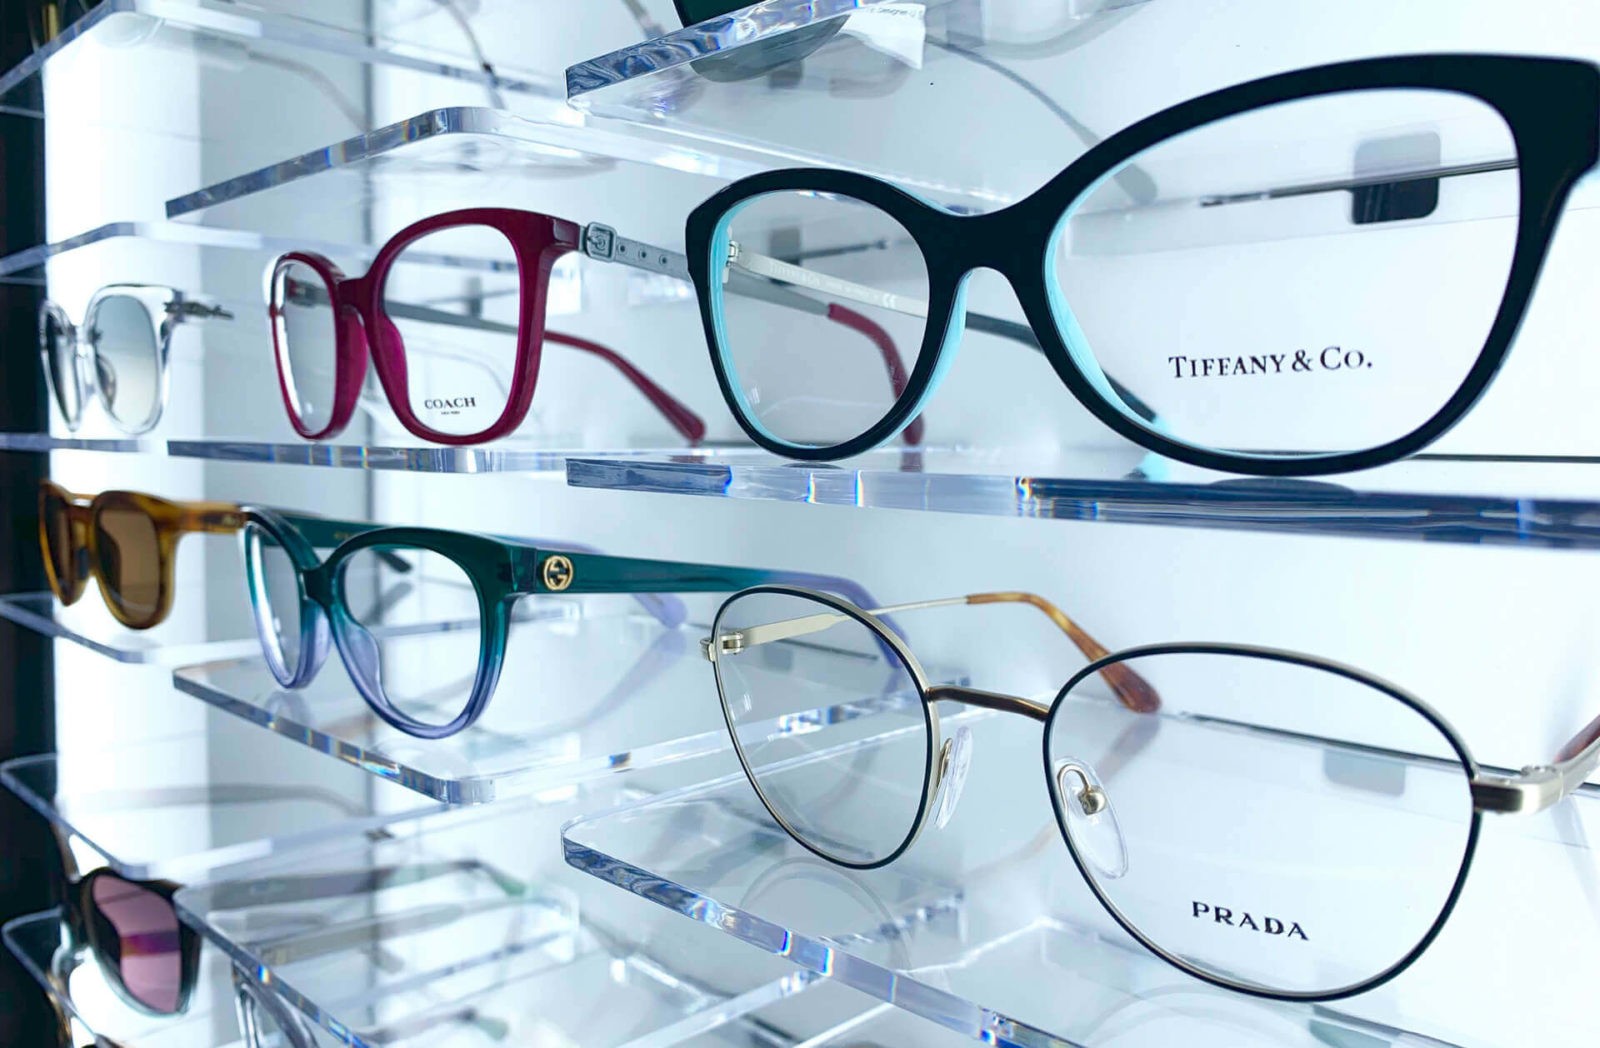 https://www.envisioneyeva.com/wp-content/uploads/2021/01/envision-eye-care-eyeglass-frames.jpg